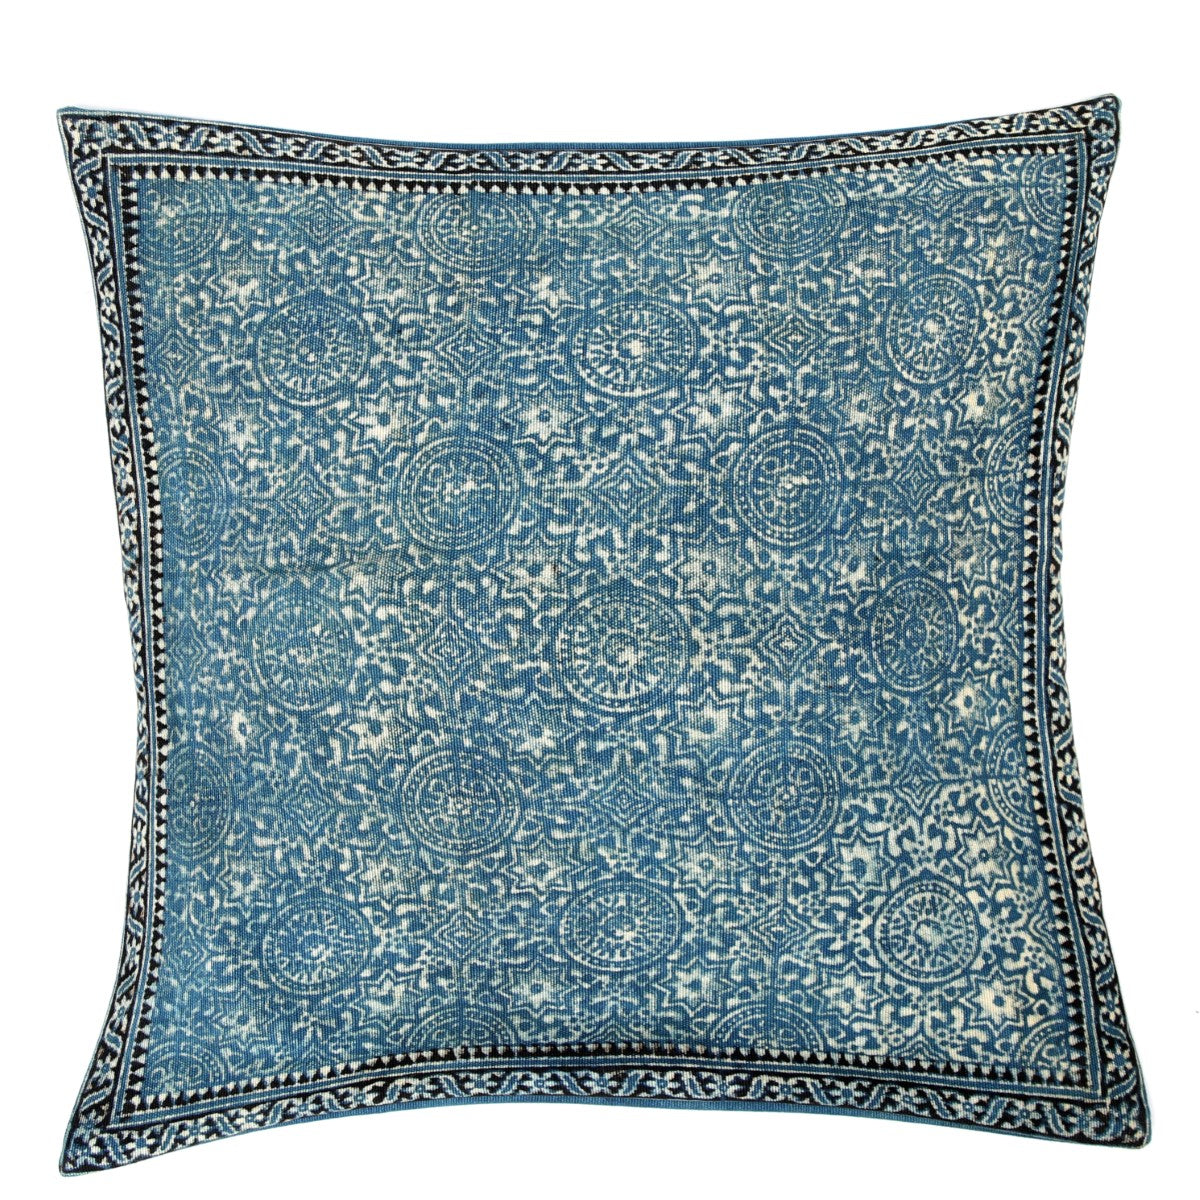 Blue Shadow Cushion Cover 20x20